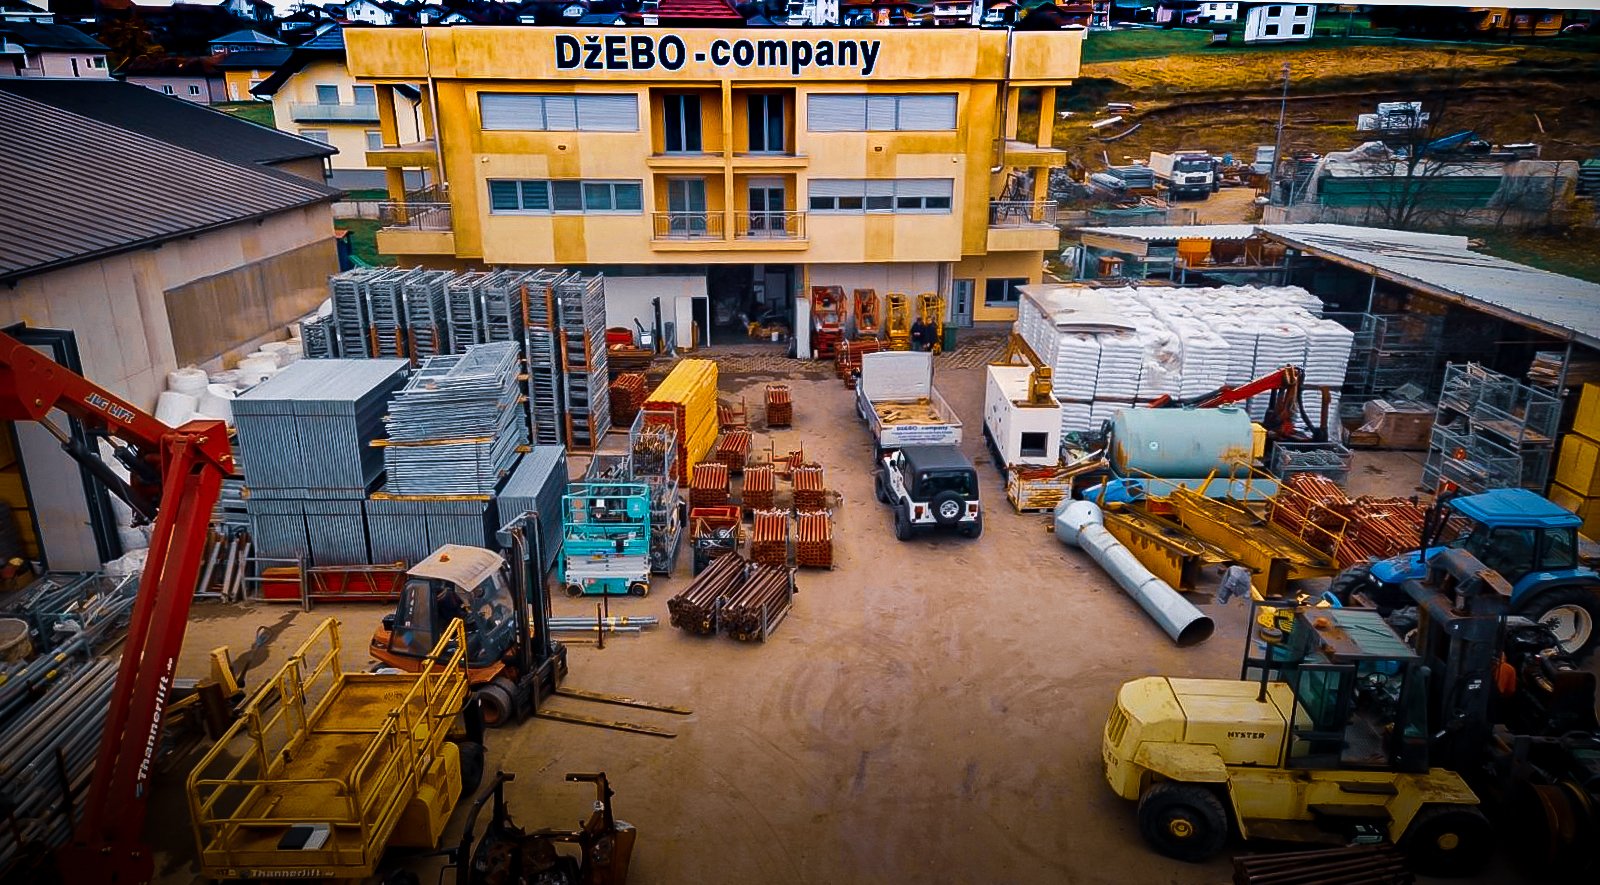 DŽEBO-Company — Vásároljon vagy béreljen felszerelést építőipari munkákhoz